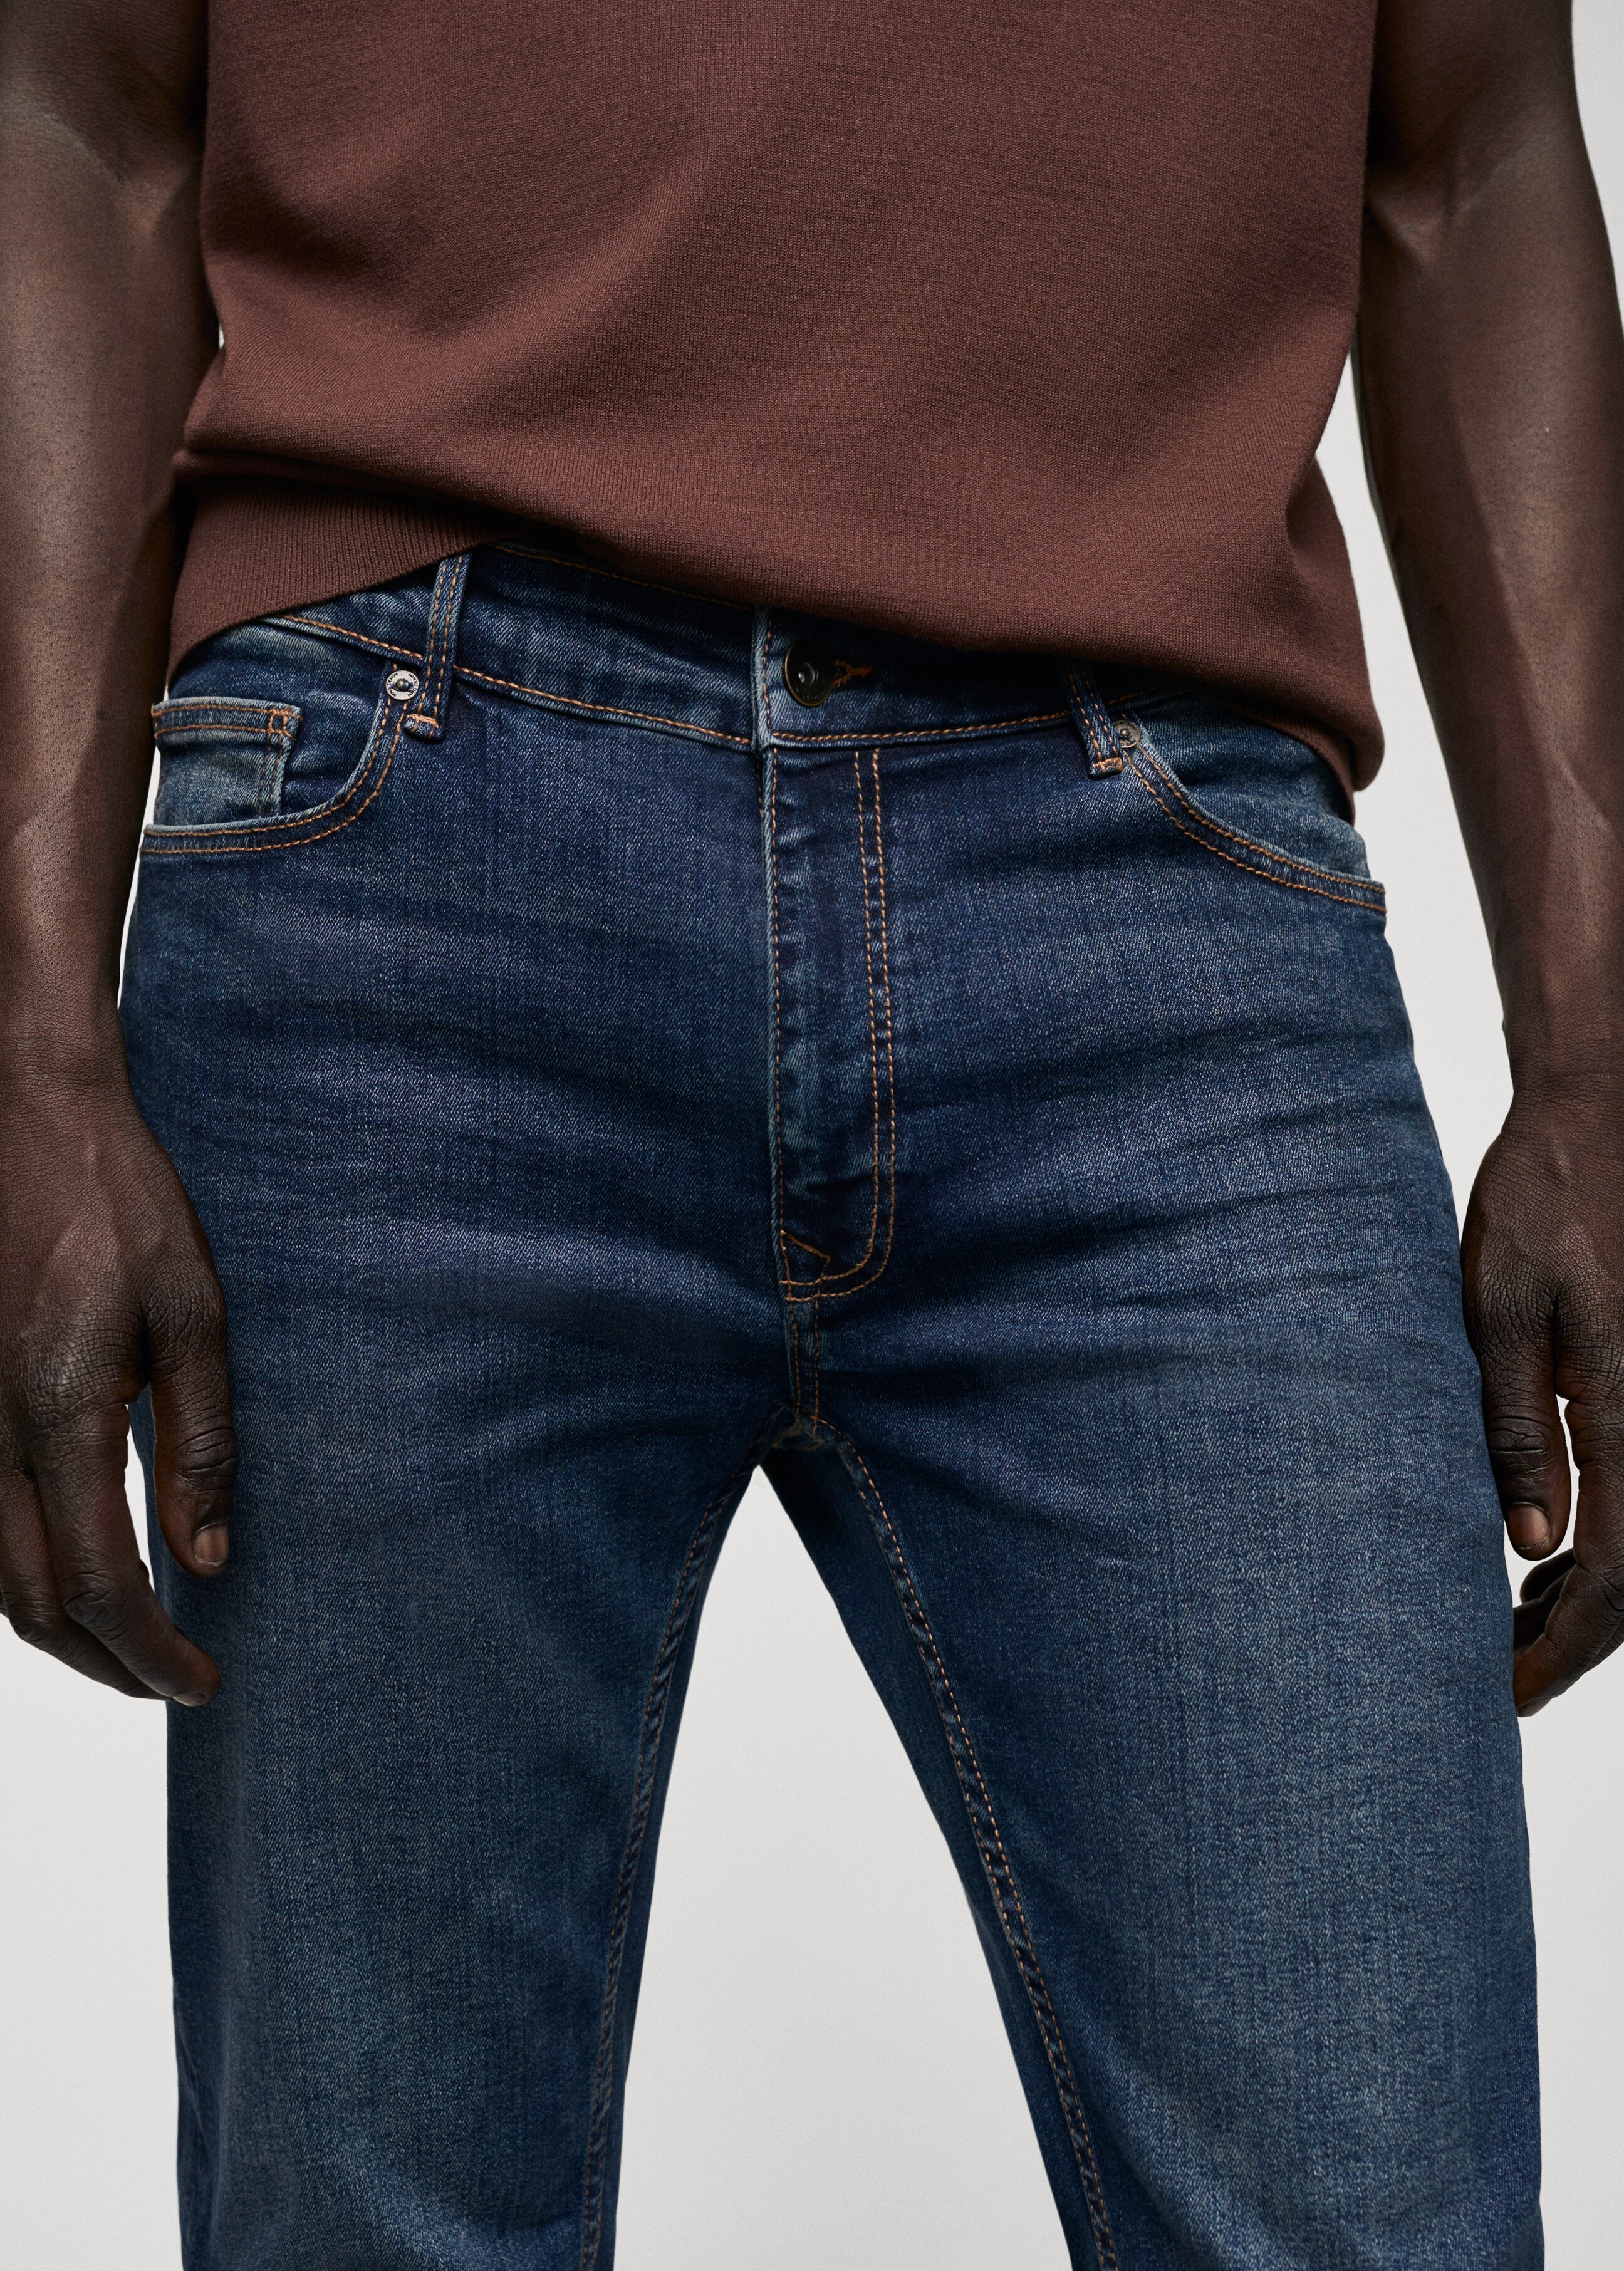 Jeans Jude skinny fit - Detalle del artículo 1